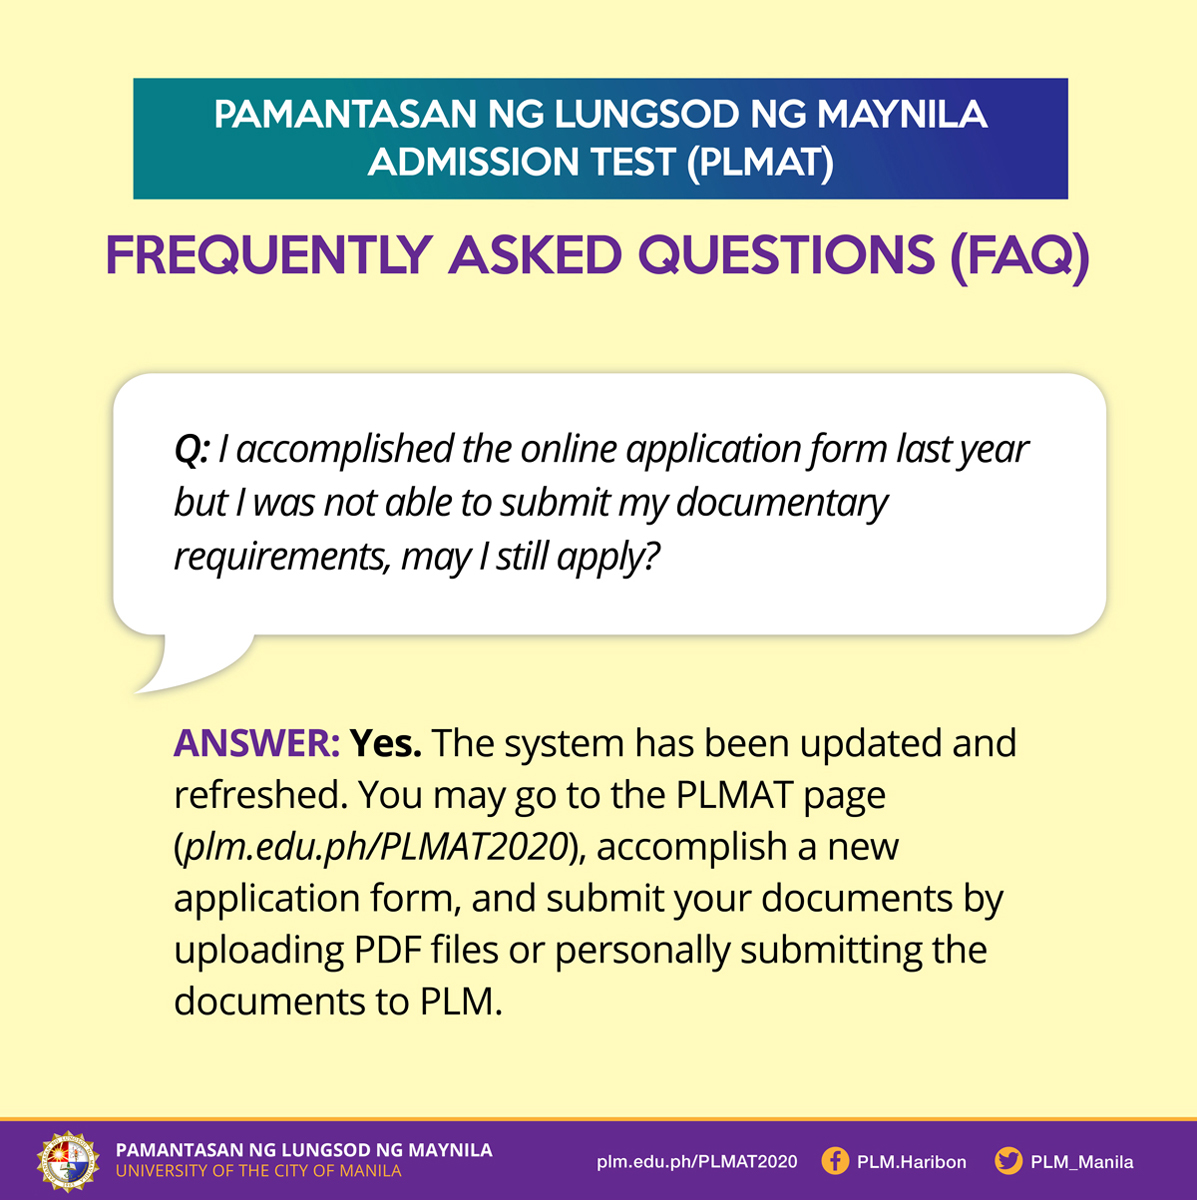 PLMAT FAQ 1: No document submission